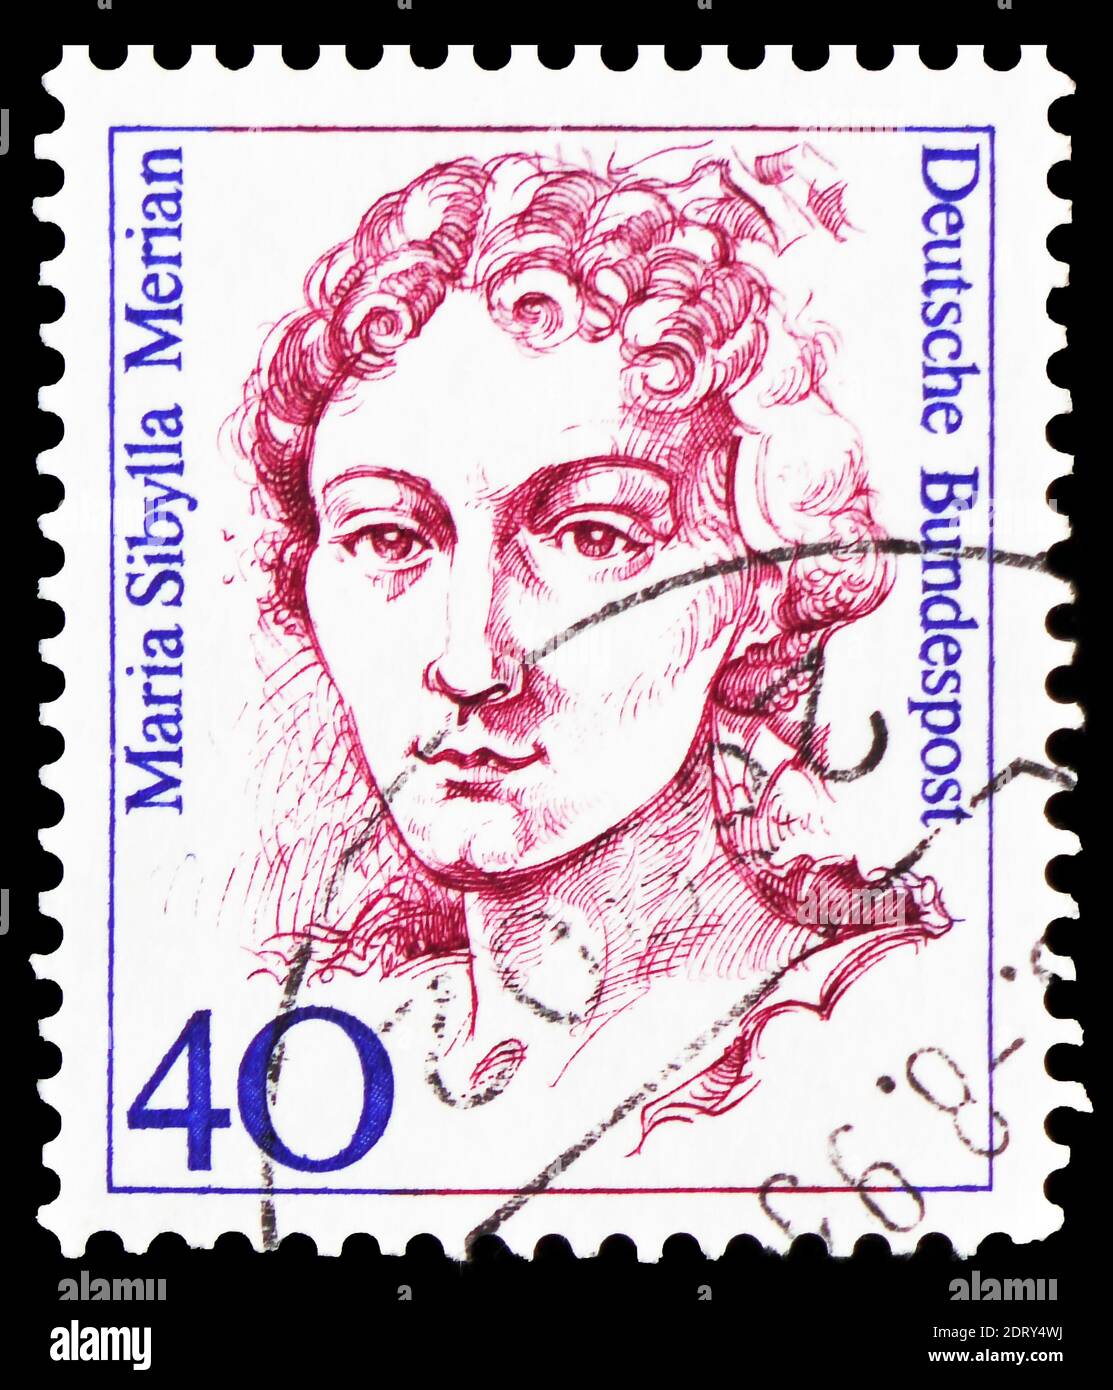 MOSCÚ, RUSIA - 20 DE FEBRERO de 2019: Un sello impreso en Alemania, República Federal, muestra a Maria Sibylla Merian (1647-1717), pintor, naturalista y scie Foto de stock